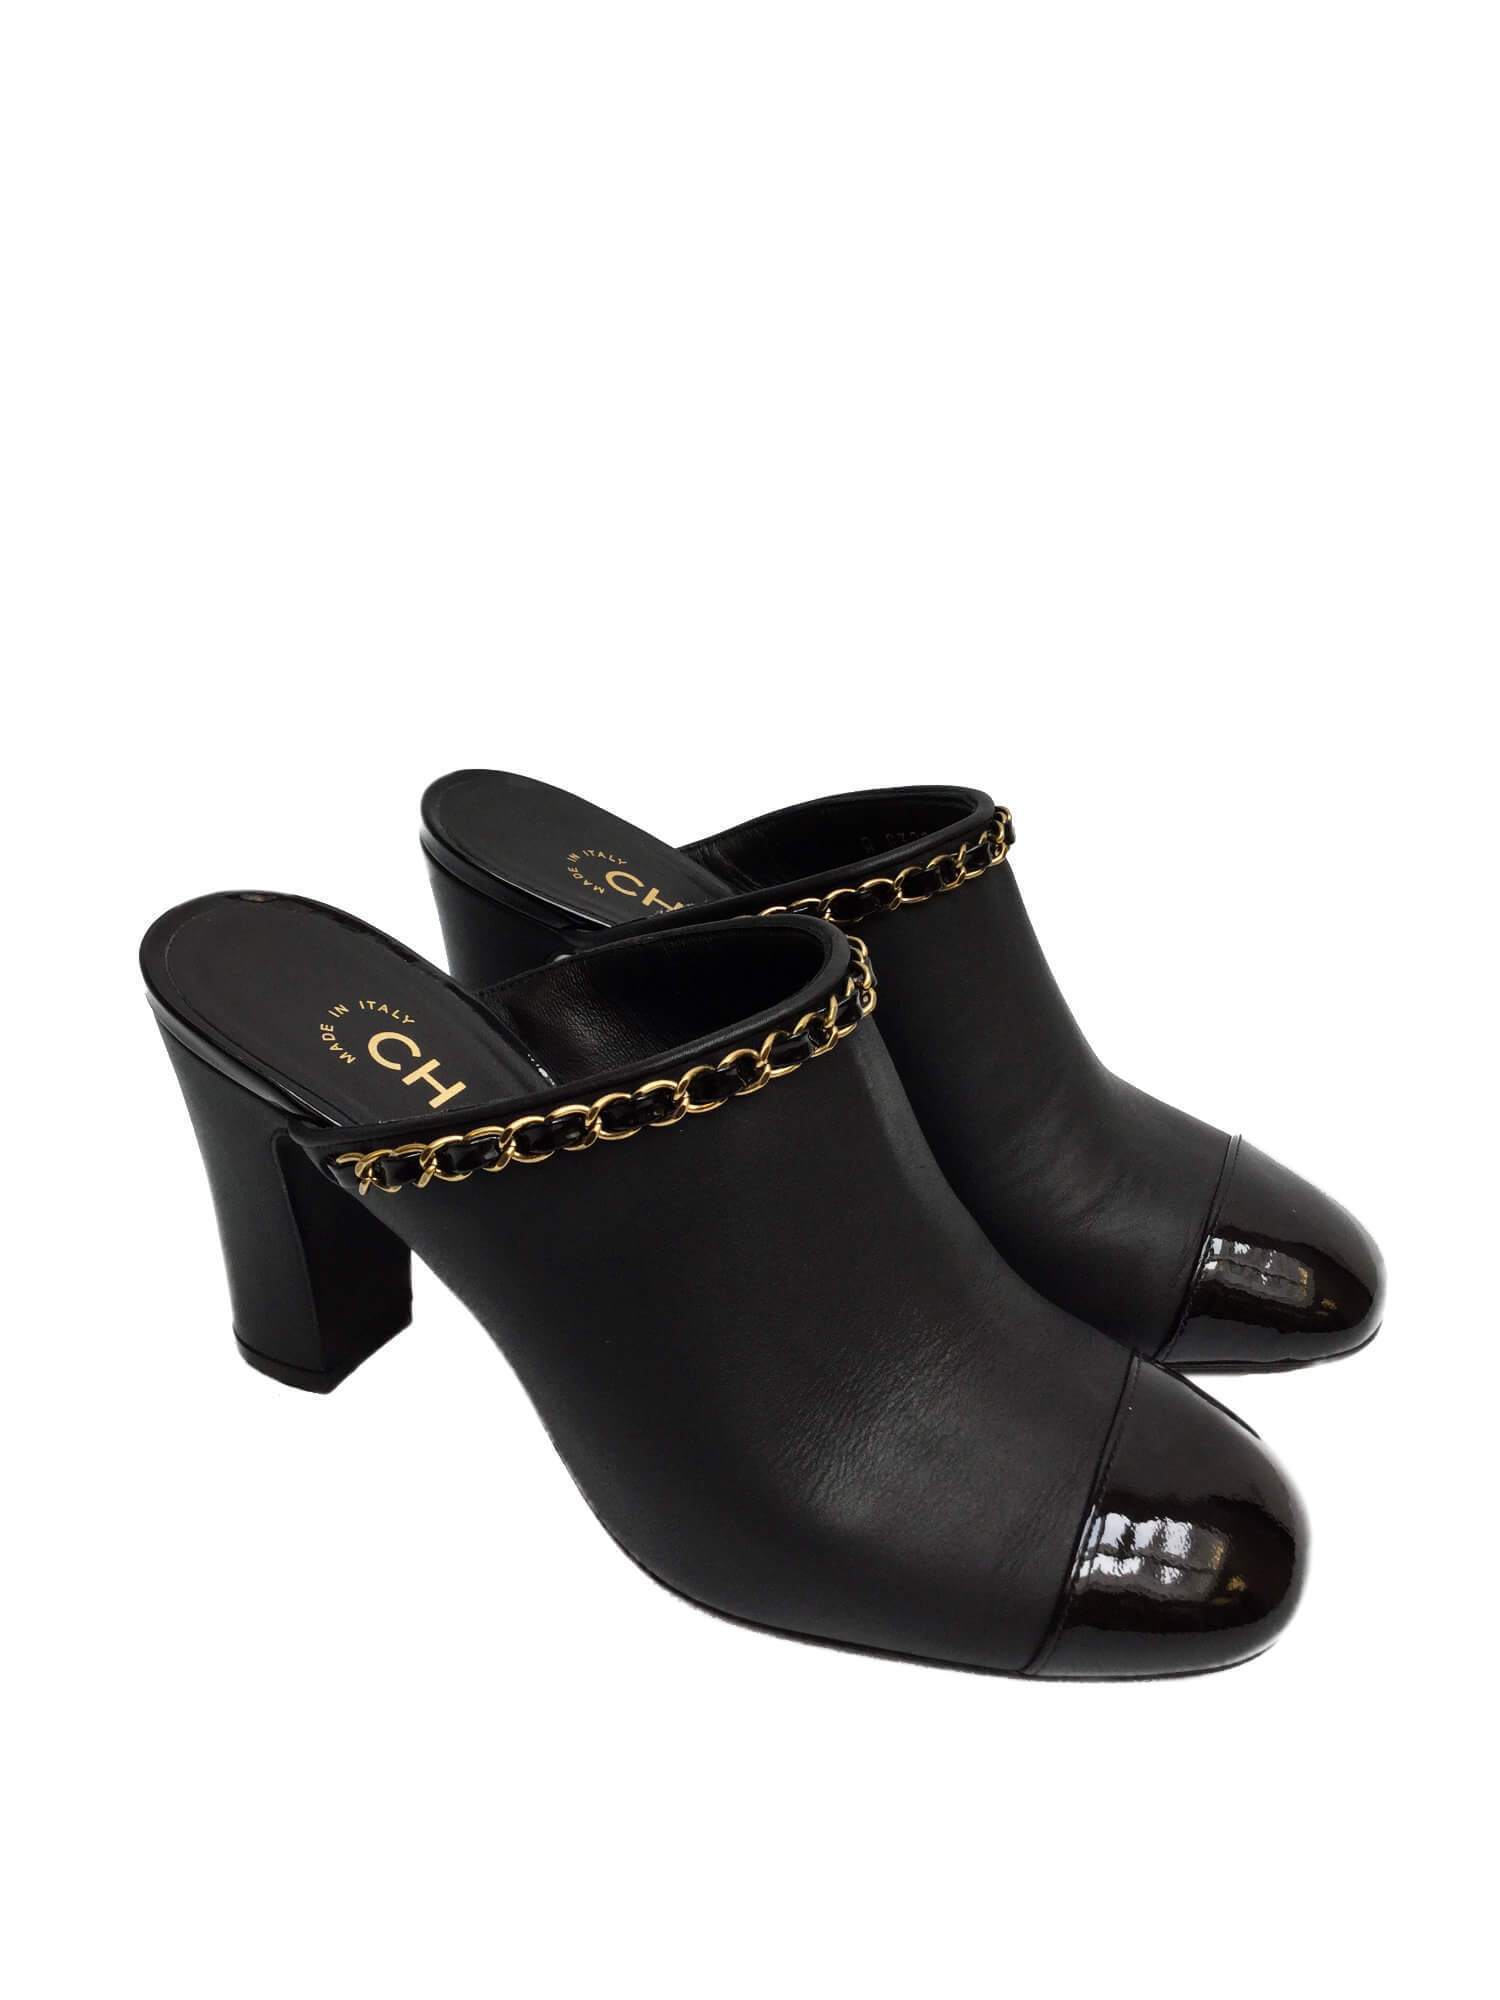 CC Logo Black Leather Mules Shoes Golden Chain 36.5-designer resale